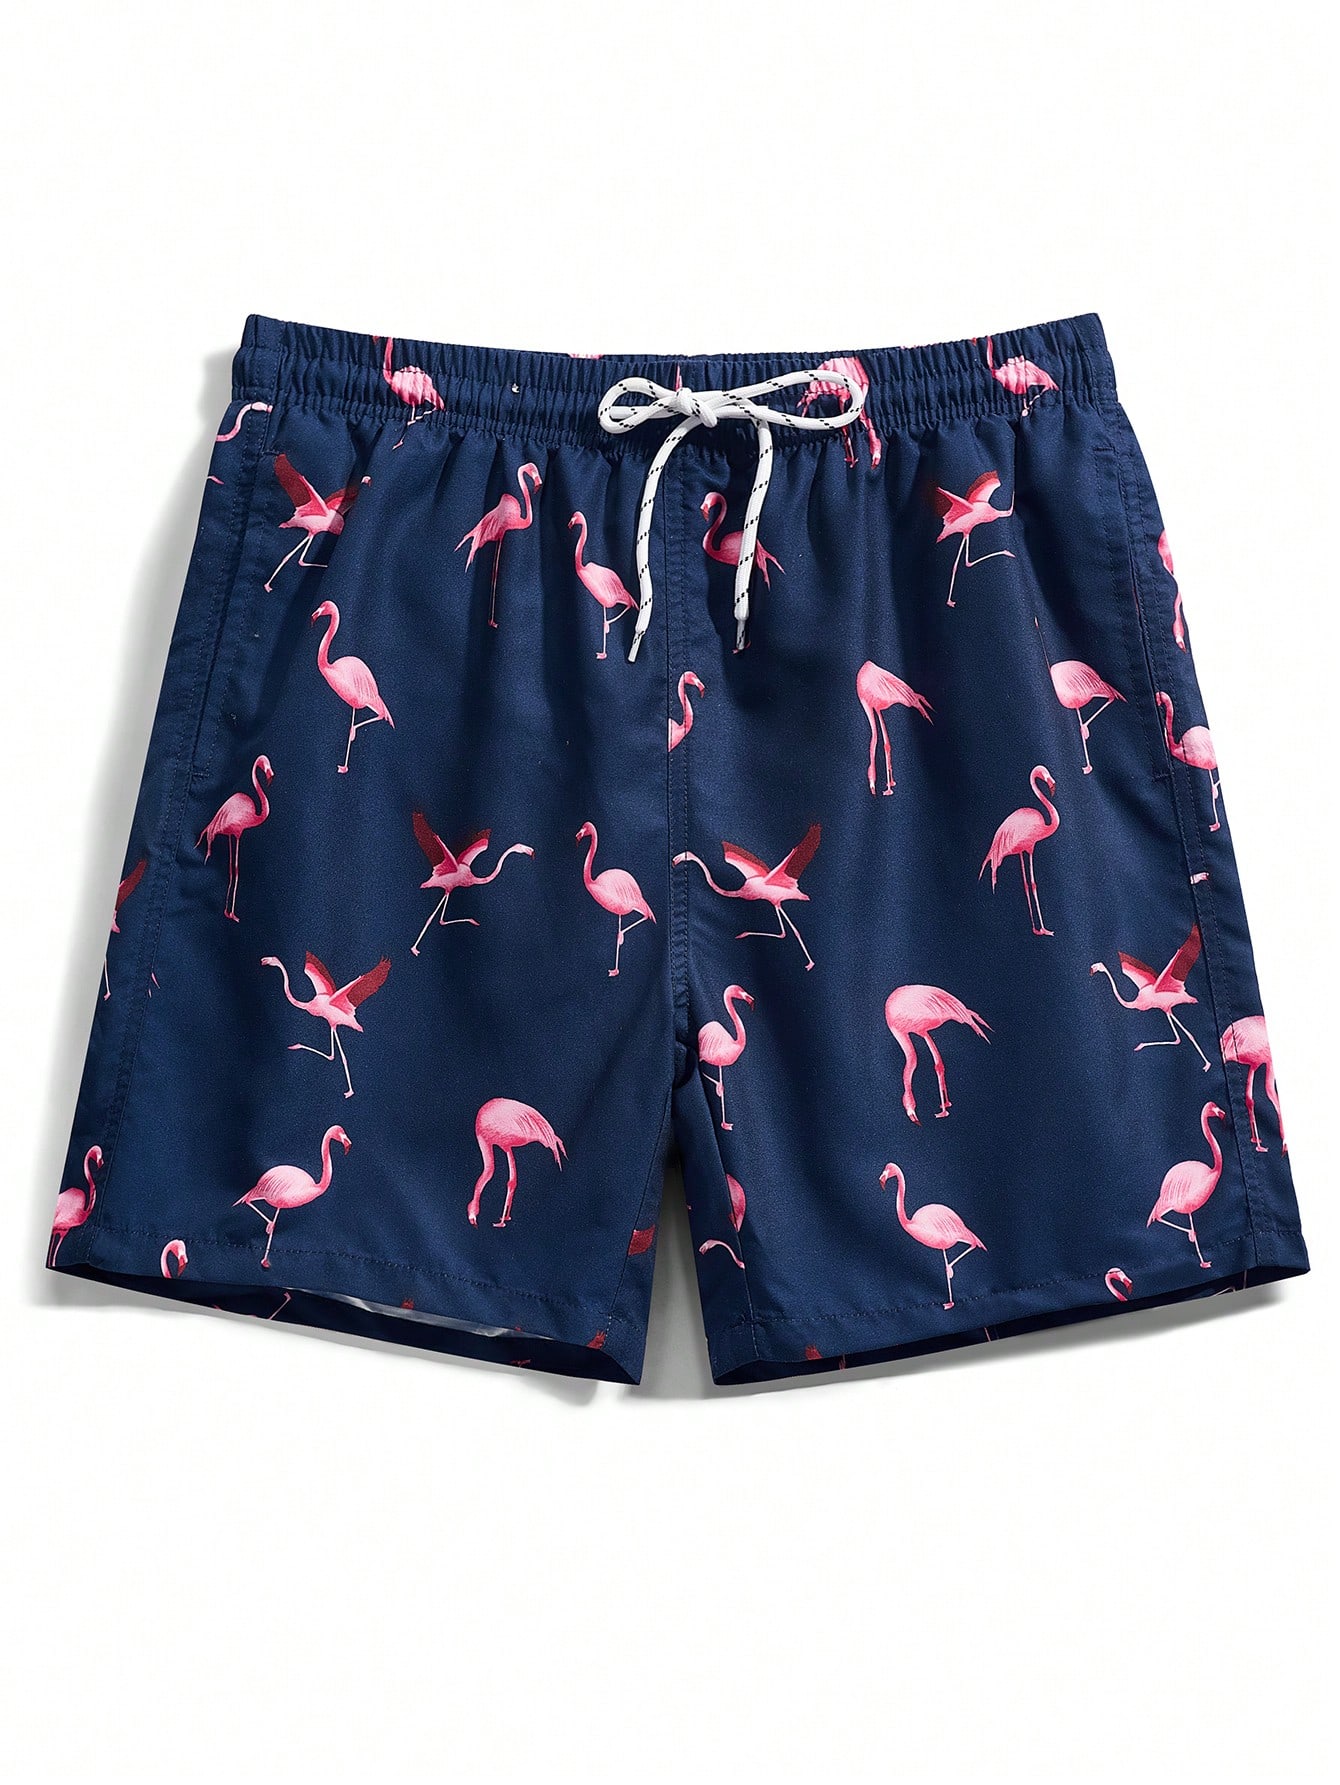 Мужские пляжные шорты Manfinity с принтом фламинго и завязками на талии, темно-синий пляжные штаны мужские шорты с узором в виде гуль летние пляжные шорты с 3d принтом модные повседневные мужские шорты 2021 большие размеры